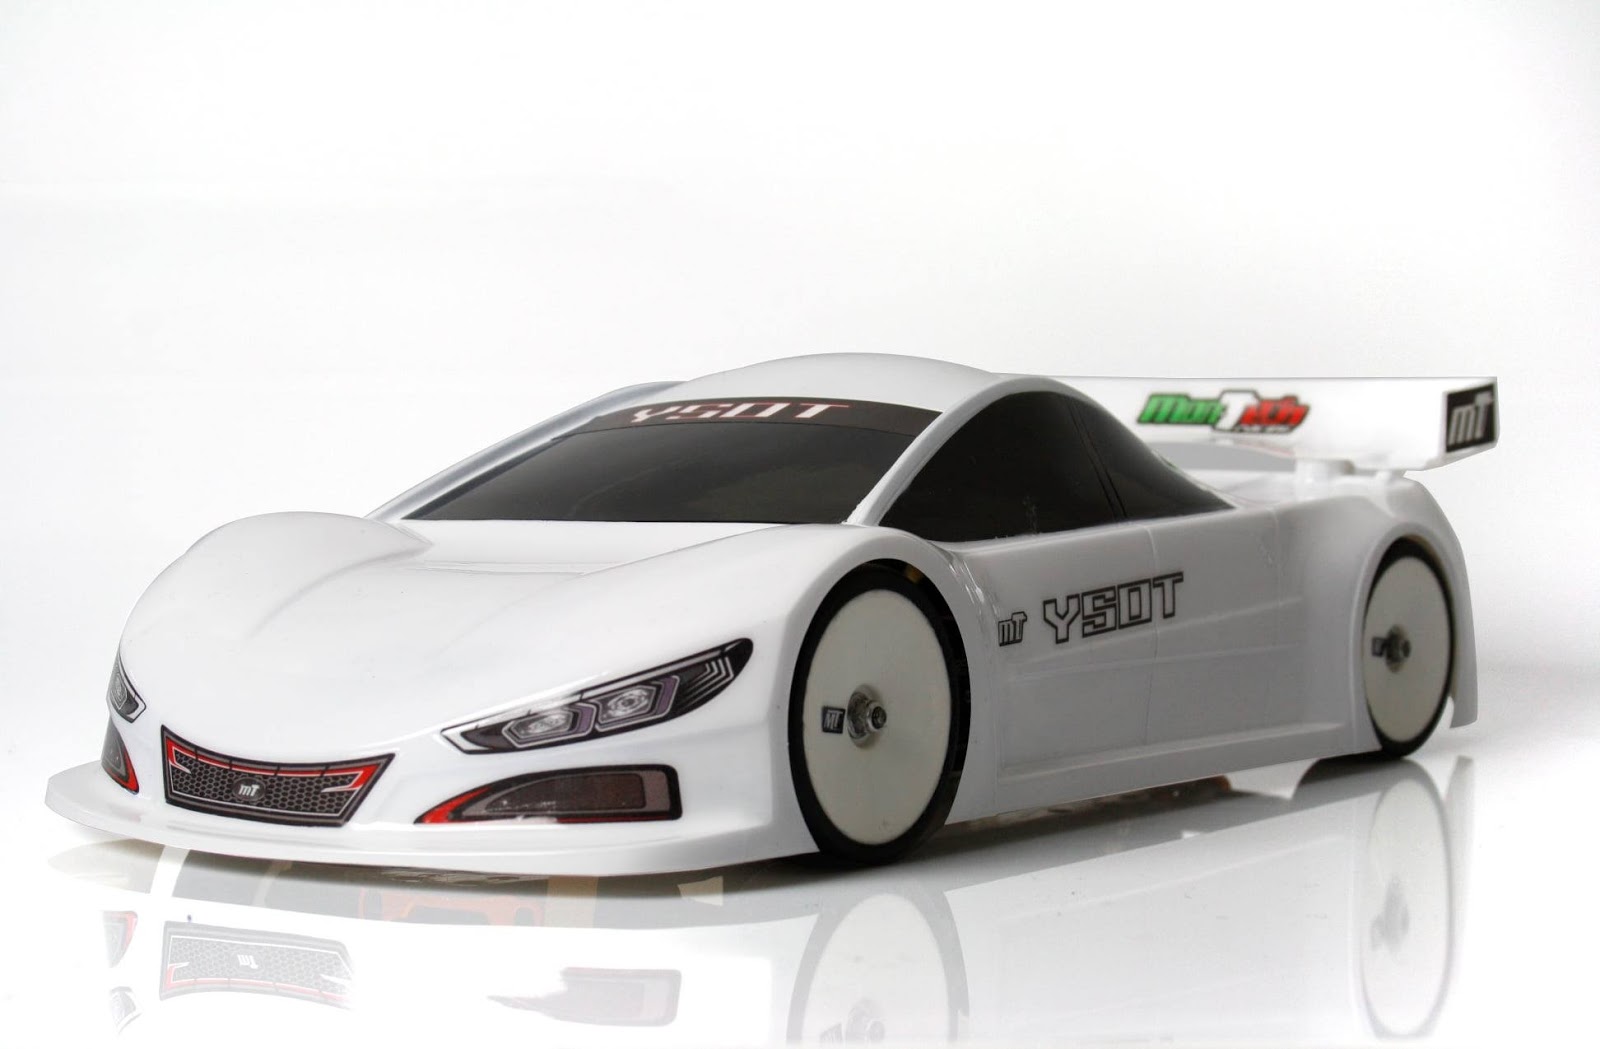 Mon‐Tech 1/10電動ツーリングカー用ボディ「YSOT」発表|ラジコンもんちぃ - オフロード/オンロード/ドリフト ラジコンニュース